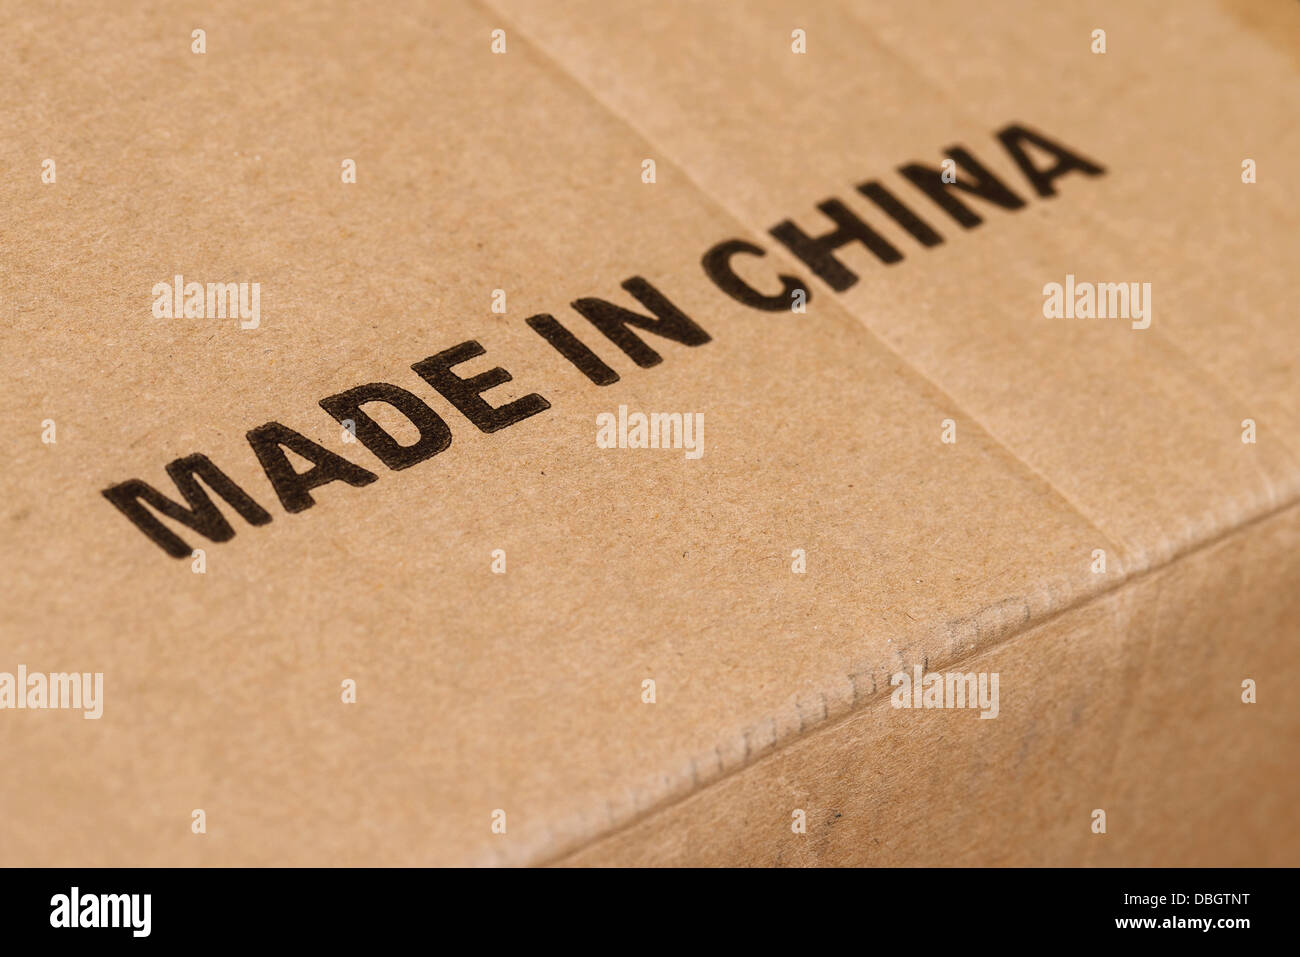 Hergestellt in China auf einem Karton gedruckt Stockfoto